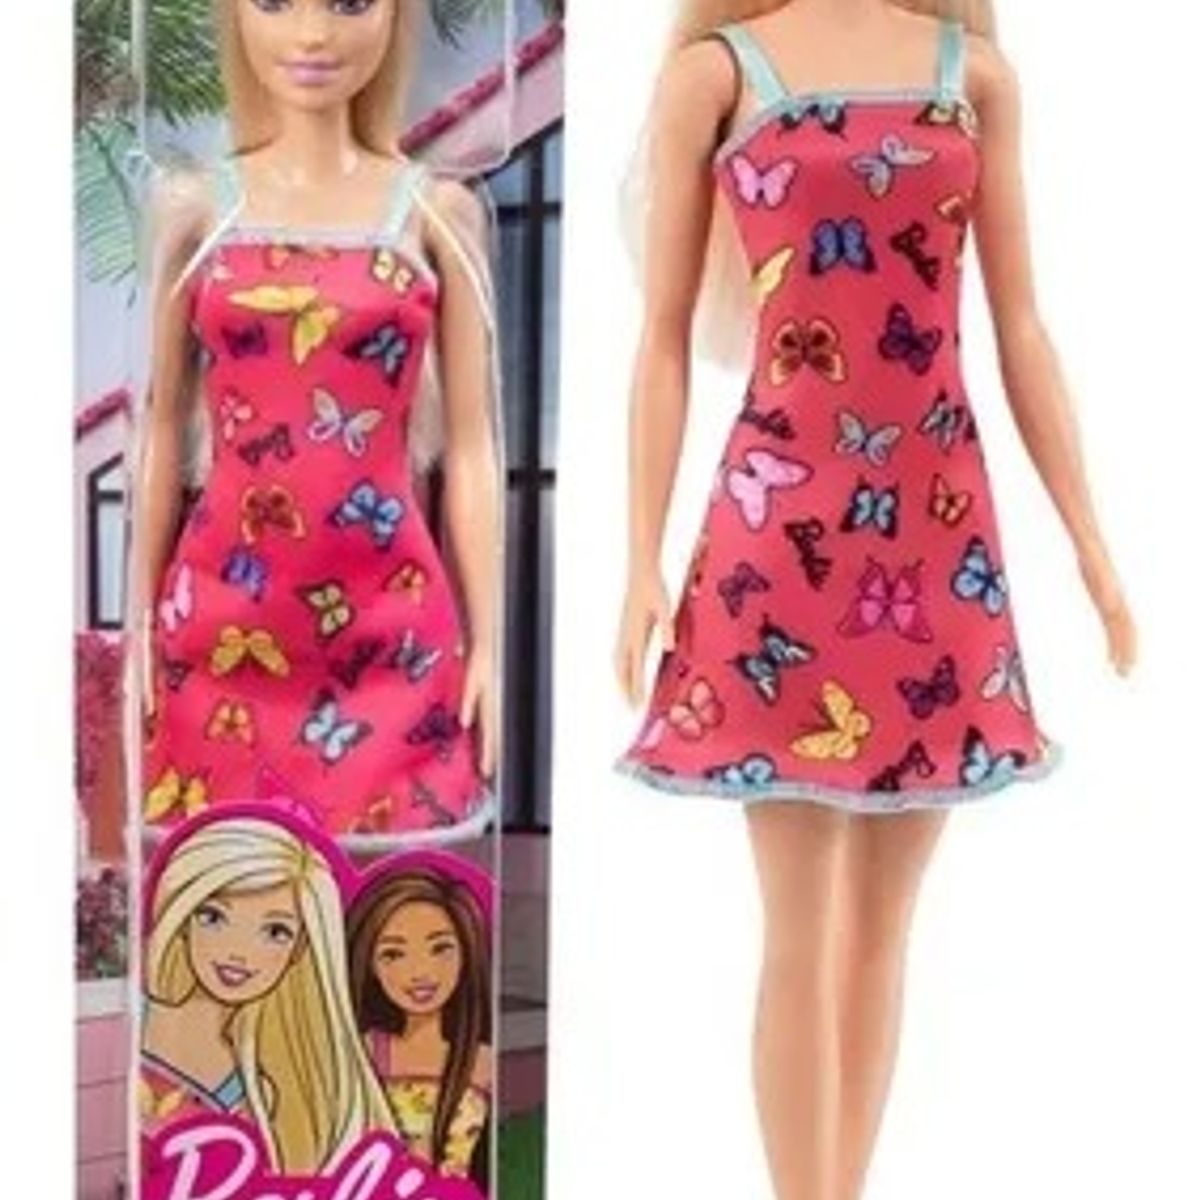 Caixa com 12 Unidades Boneca Barbie Loira Vestido Borboleta Mattel